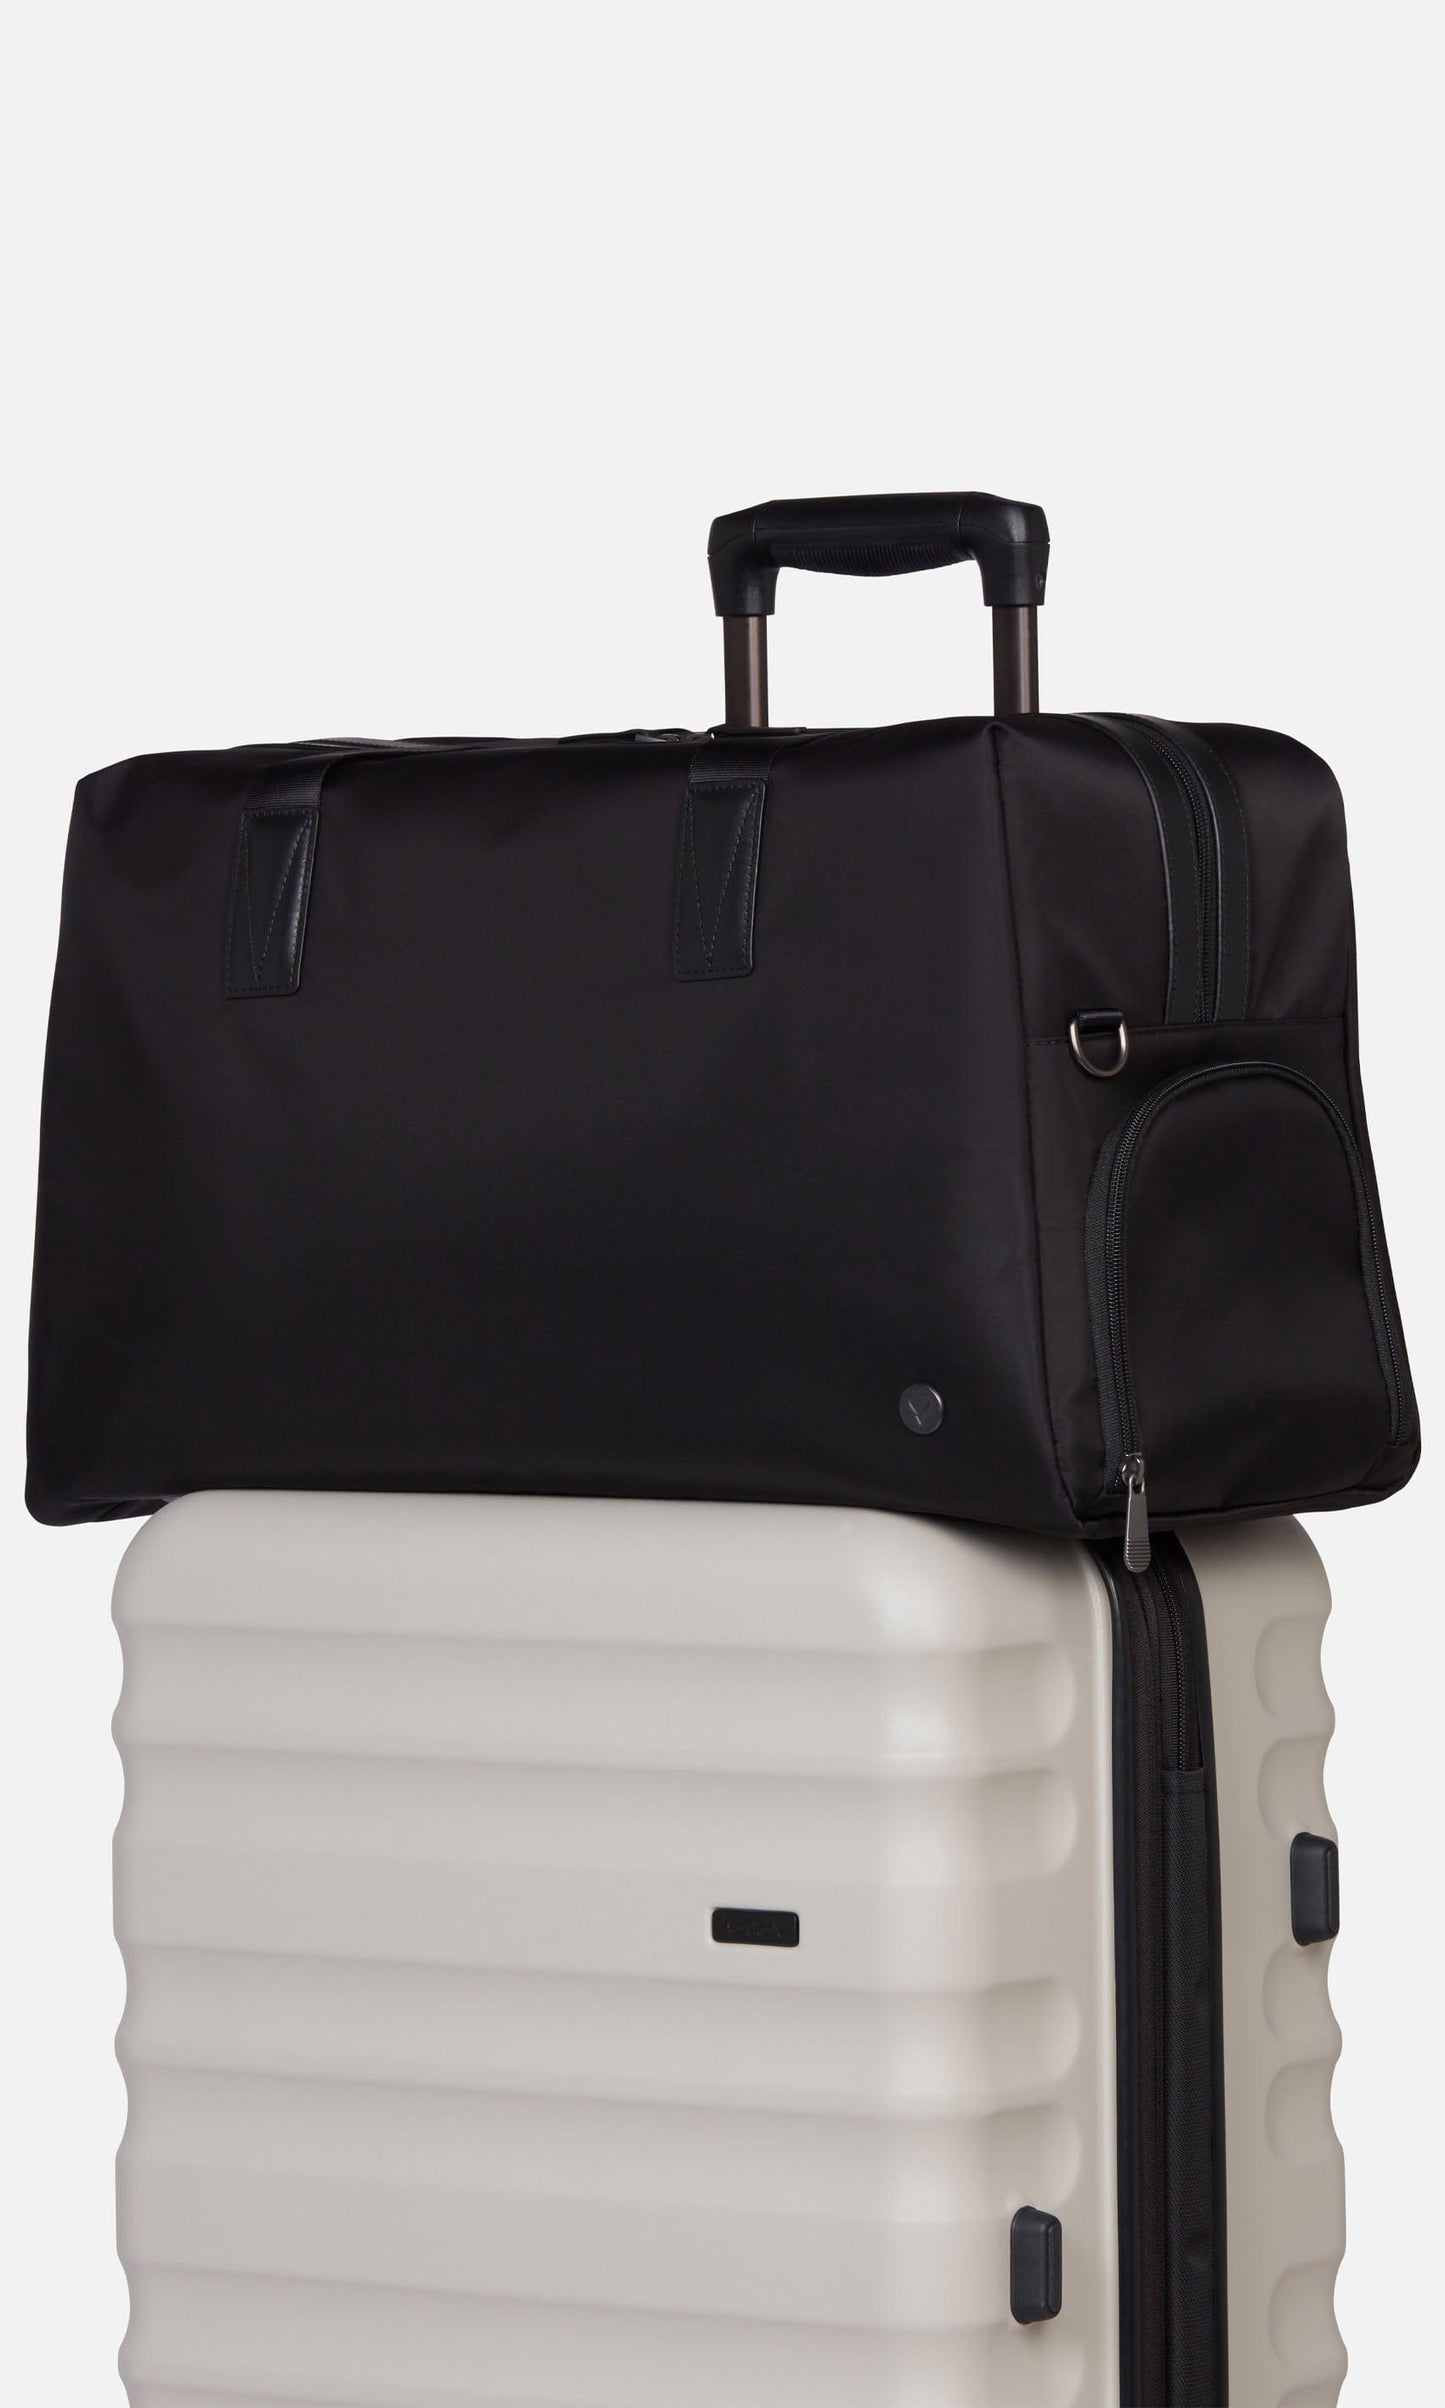 Antler Luggage -  Chelsea weekender in black - Weekend bags Chelsea Weekend Bag Black | Travel Bags | Antler UK